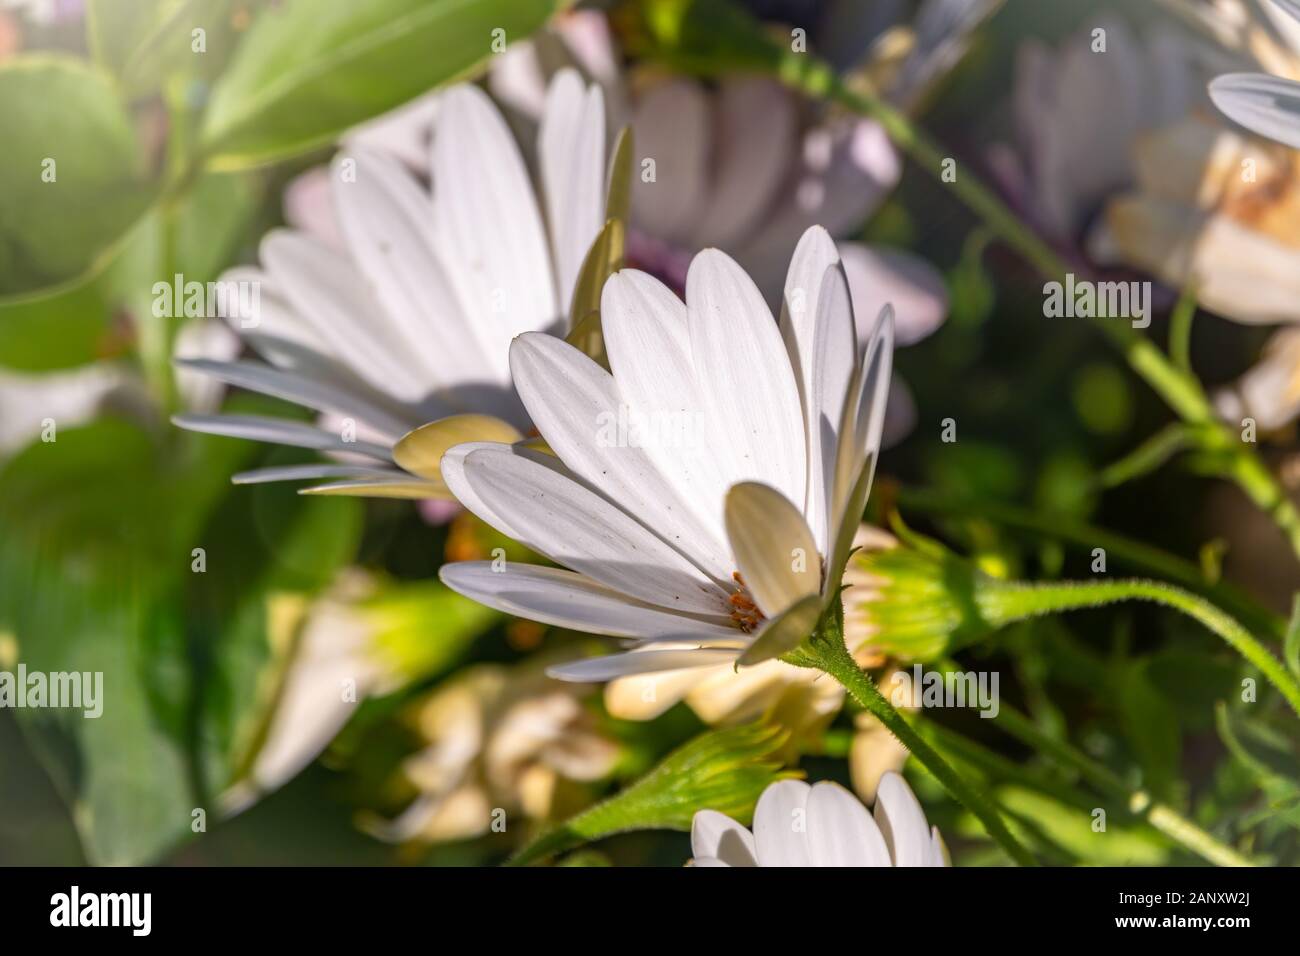 White garden flower Arctotis with blurry background. White gousblom, or african daisy, arctotis. Stock Photo